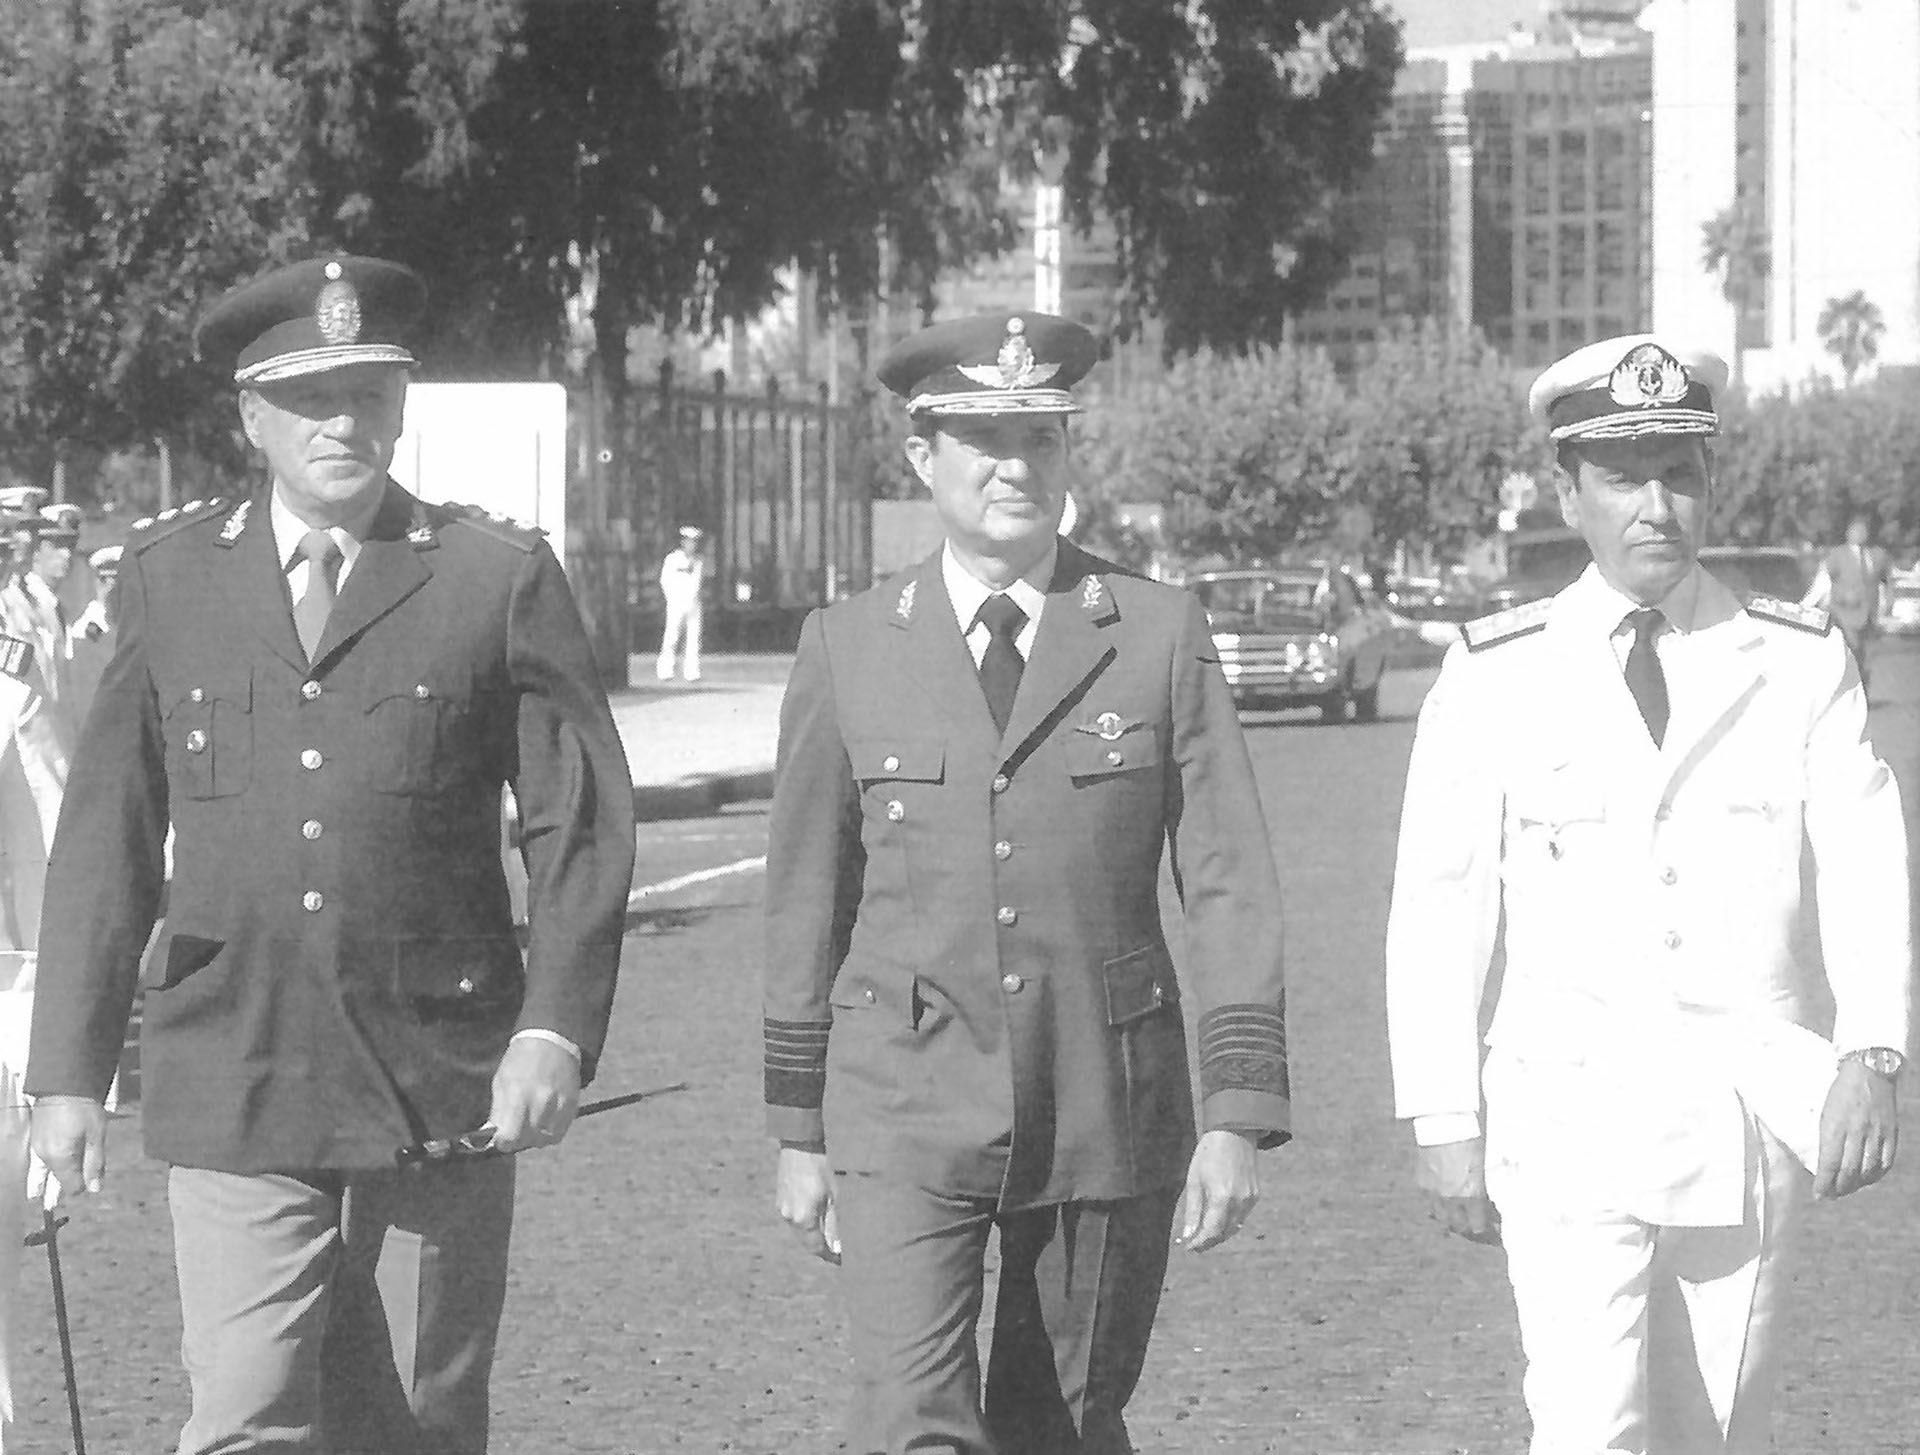 Galtieri, Lami Dozo y Anaya, la Junta Militar en 1982. "El hombre de más carácter de los tres era yo", apuntó Anaya